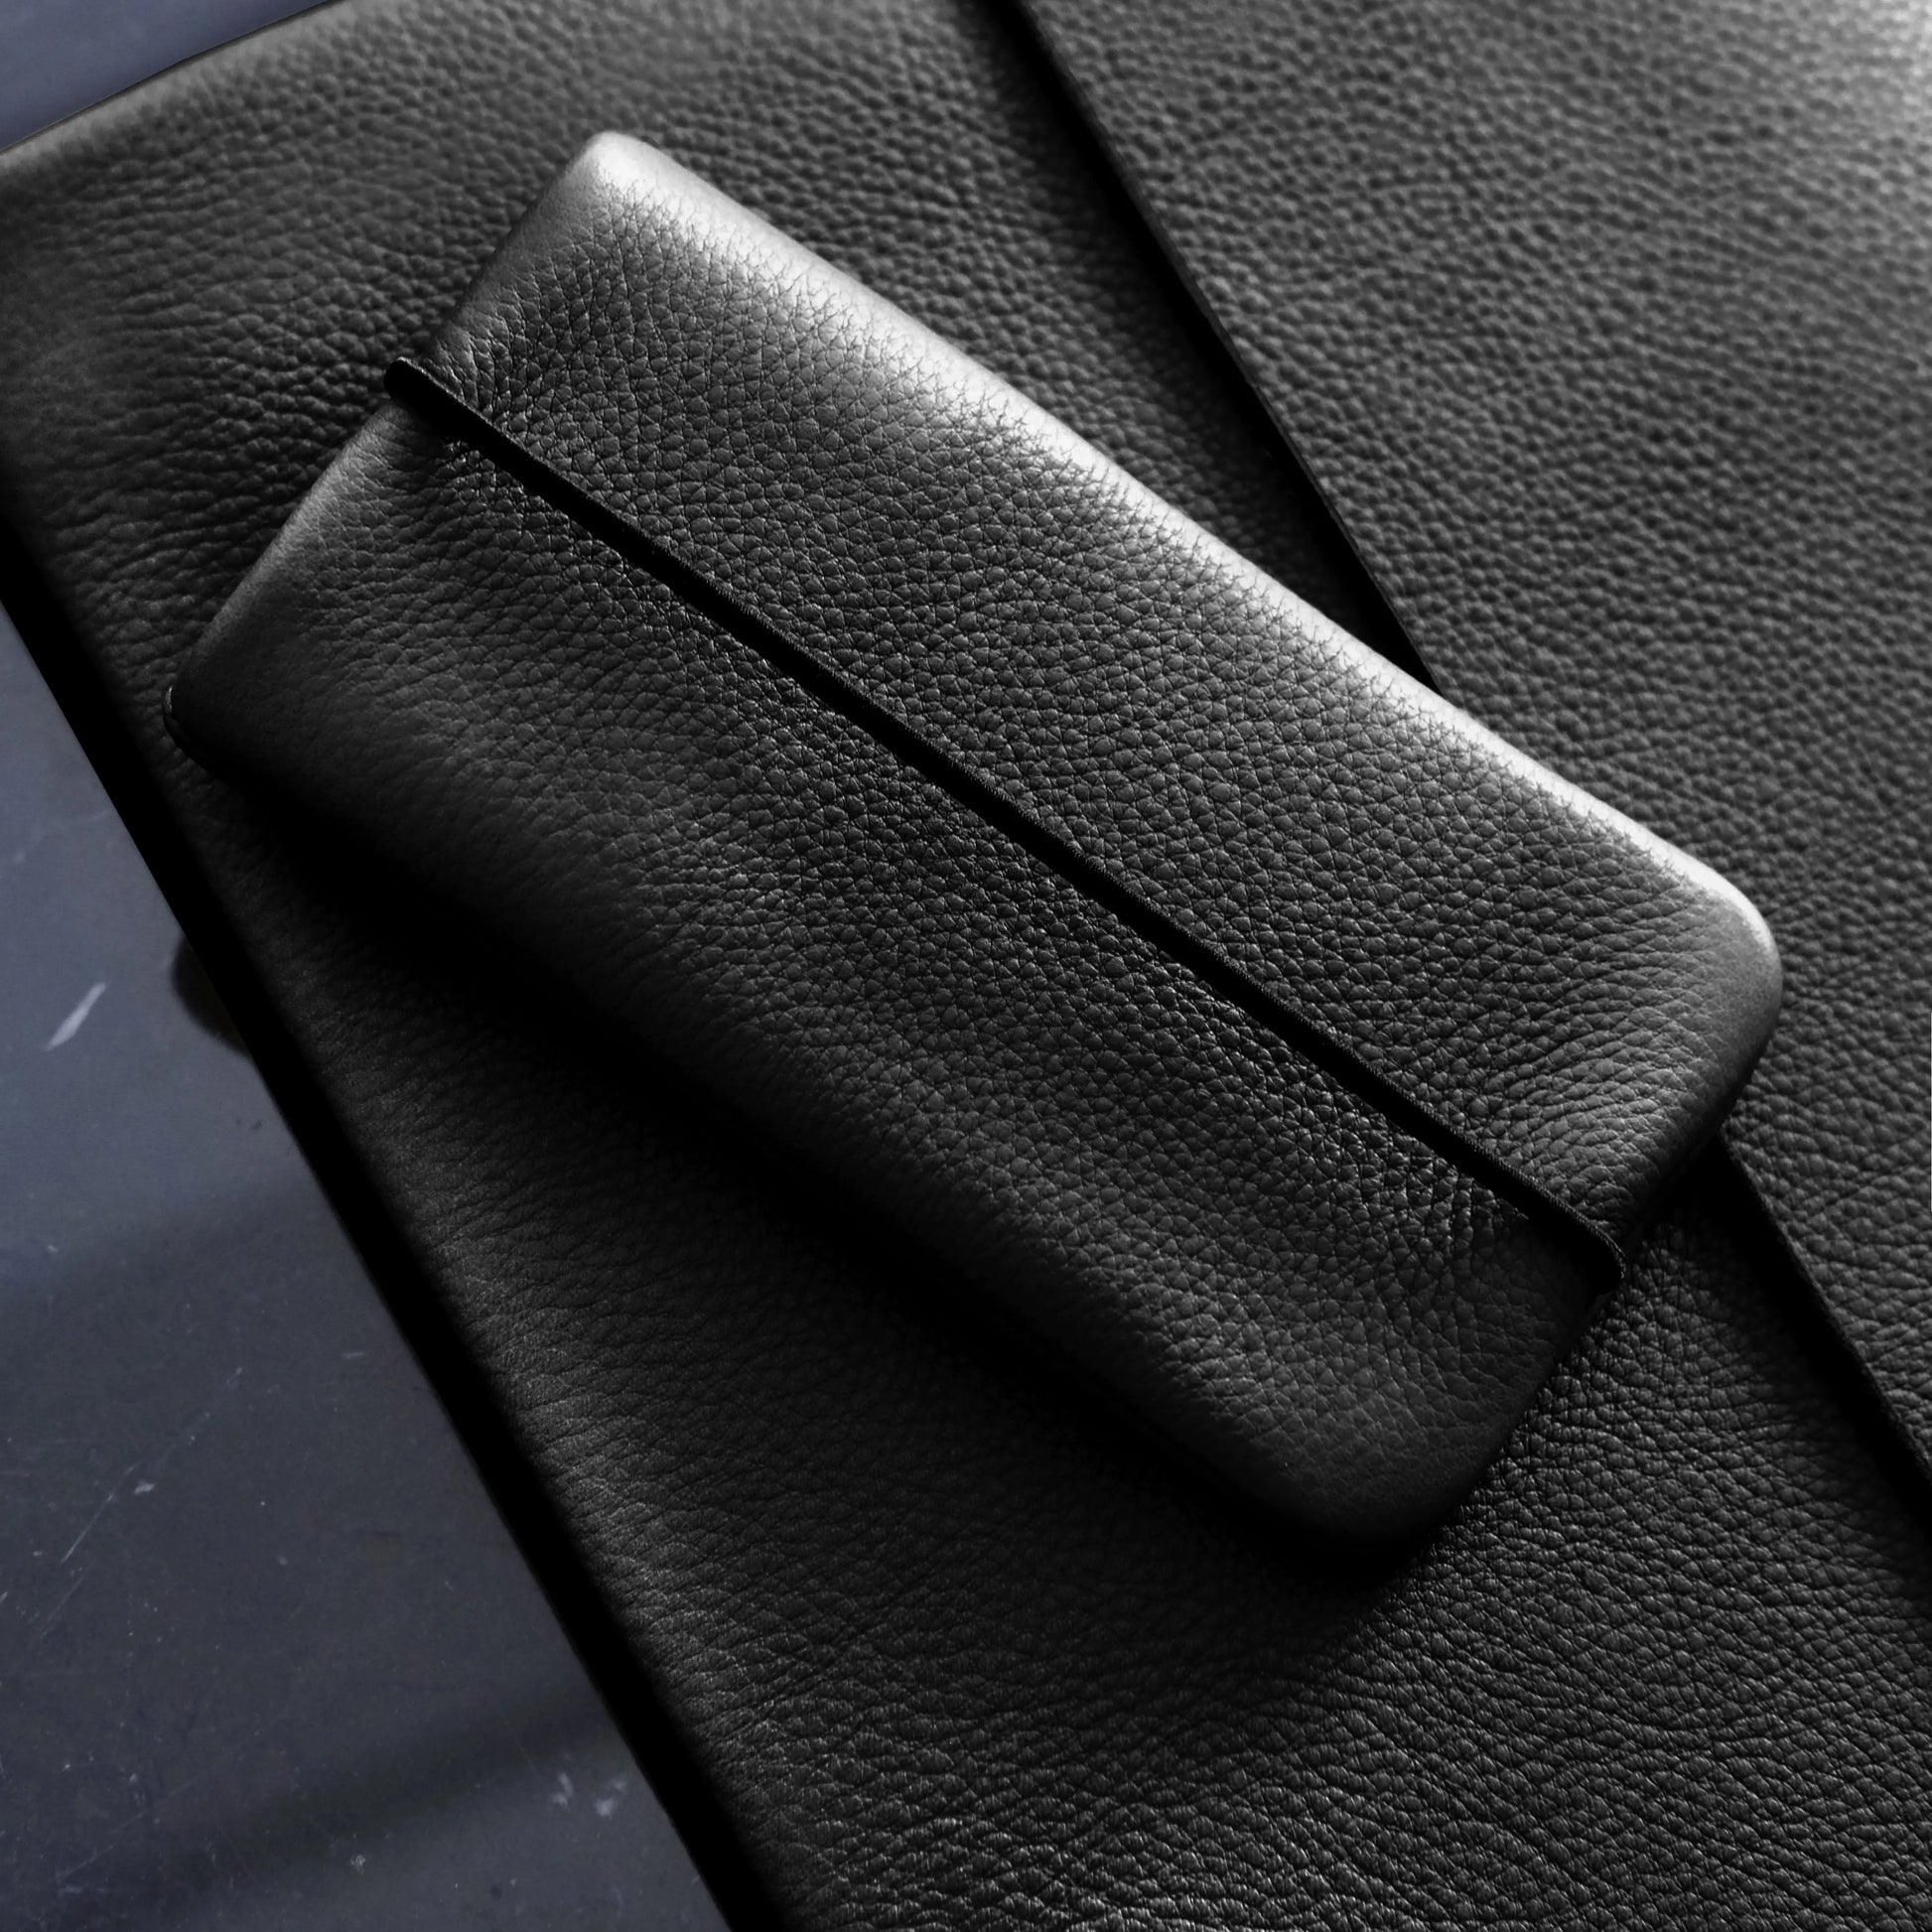 schwarze Lederhülle für Smartphones liegt auf einer schwarzen Macbookhülle aus Leder